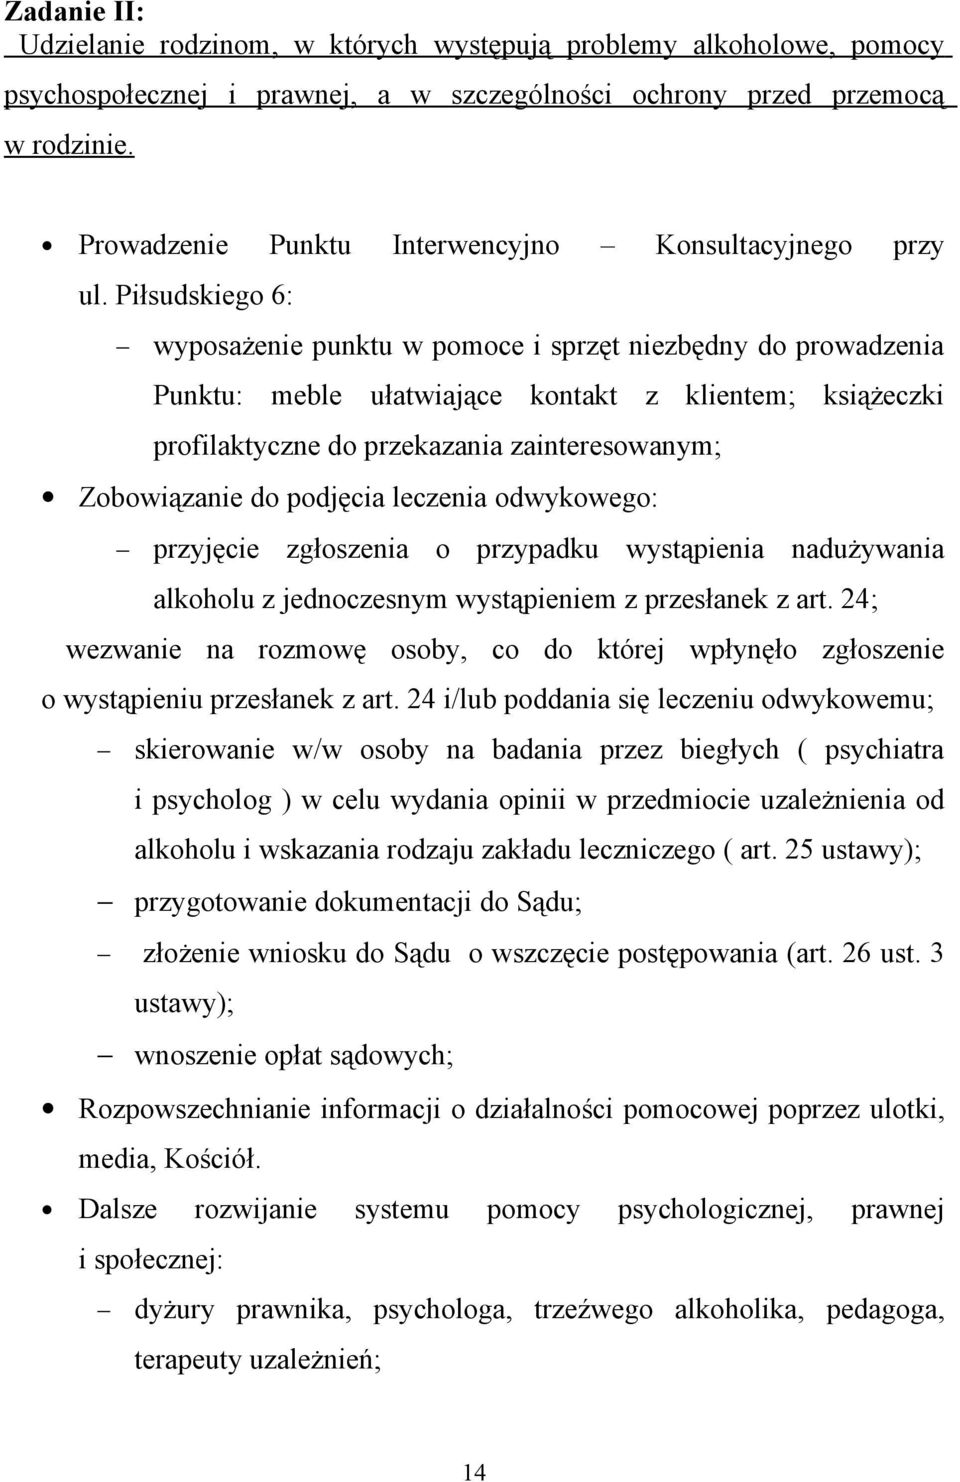 Piłsudskiego 6: wyposażenie punktu w pomoce i sprzęt niezbędny do prowadzenia Punktu: meble ułatwiające kontakt z klientem; książeczki profilaktyczne do przekazania zainteresowanym; Zobowiązanie do